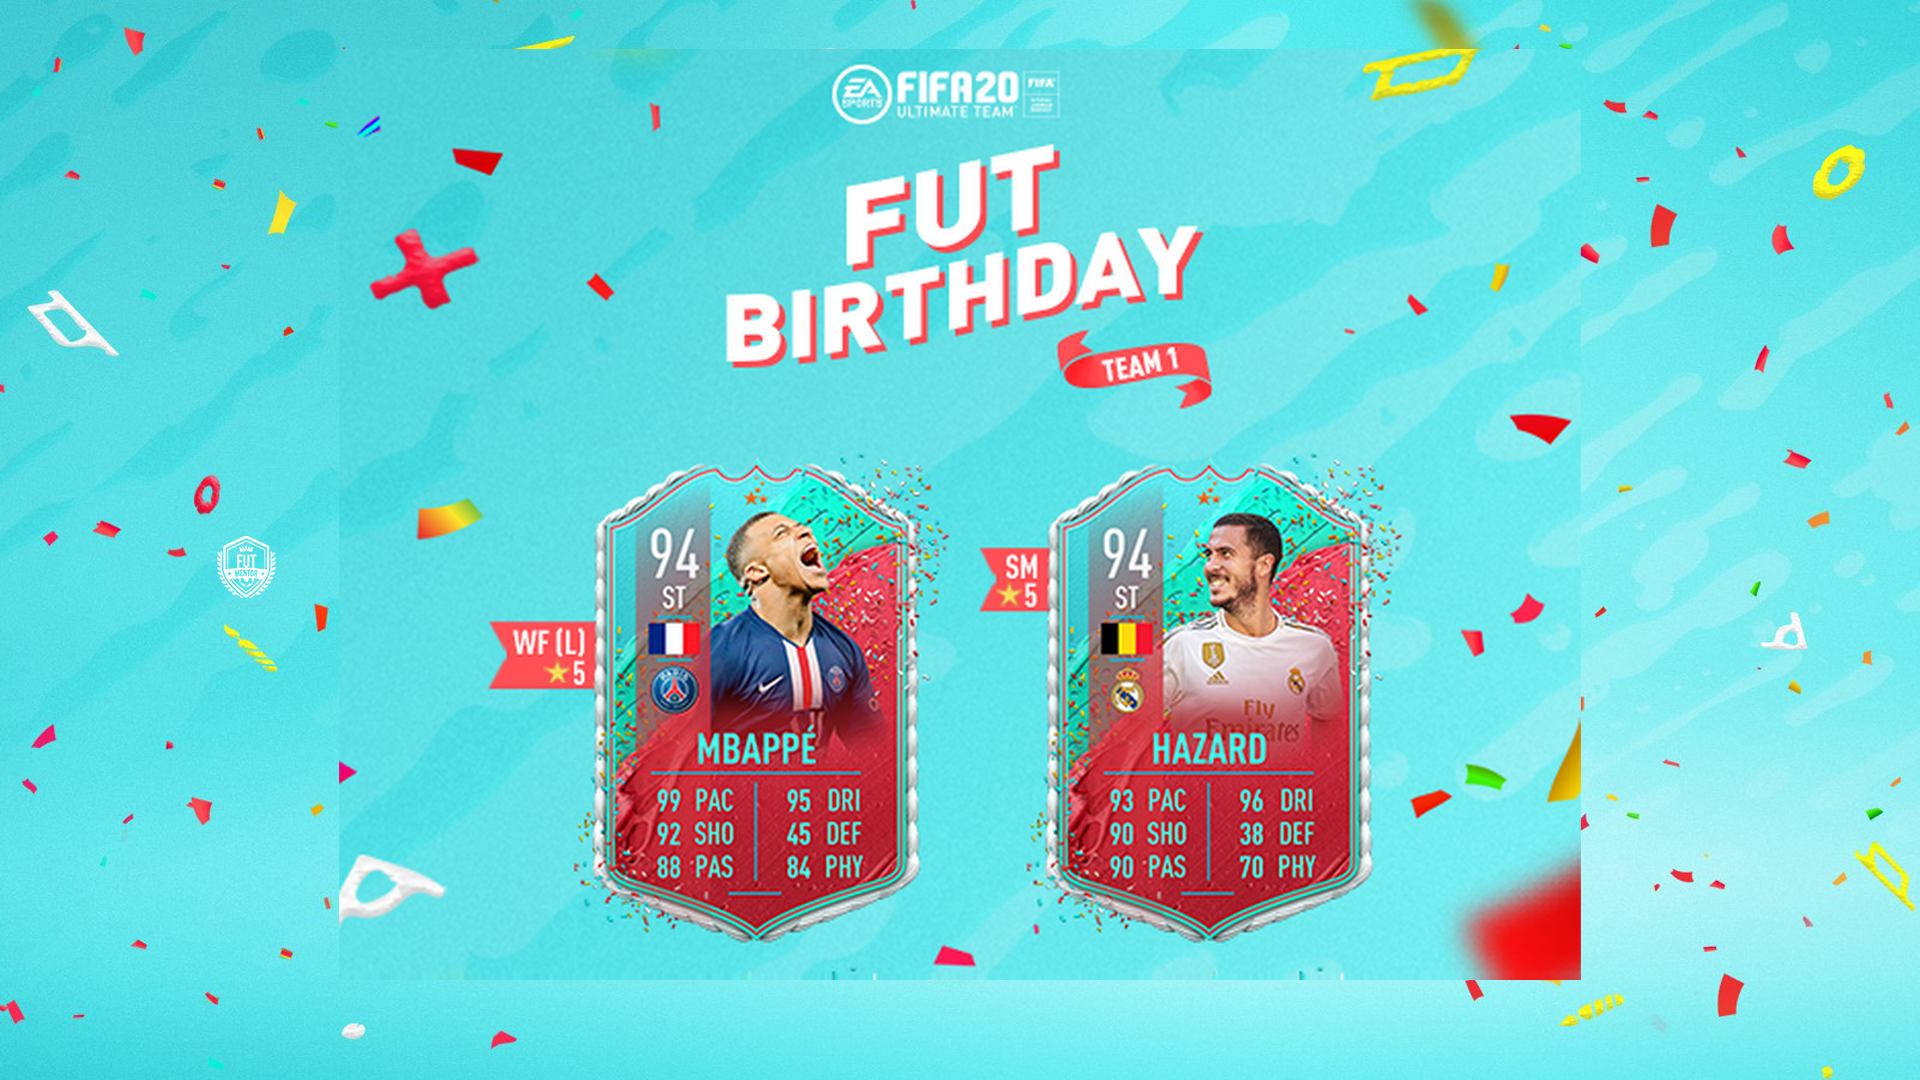 Fut birthday. FUT Birthday FIFA. FUT Birthday Card. FUT Birthday FIFA 22. FUT Birthday FIFA 23.